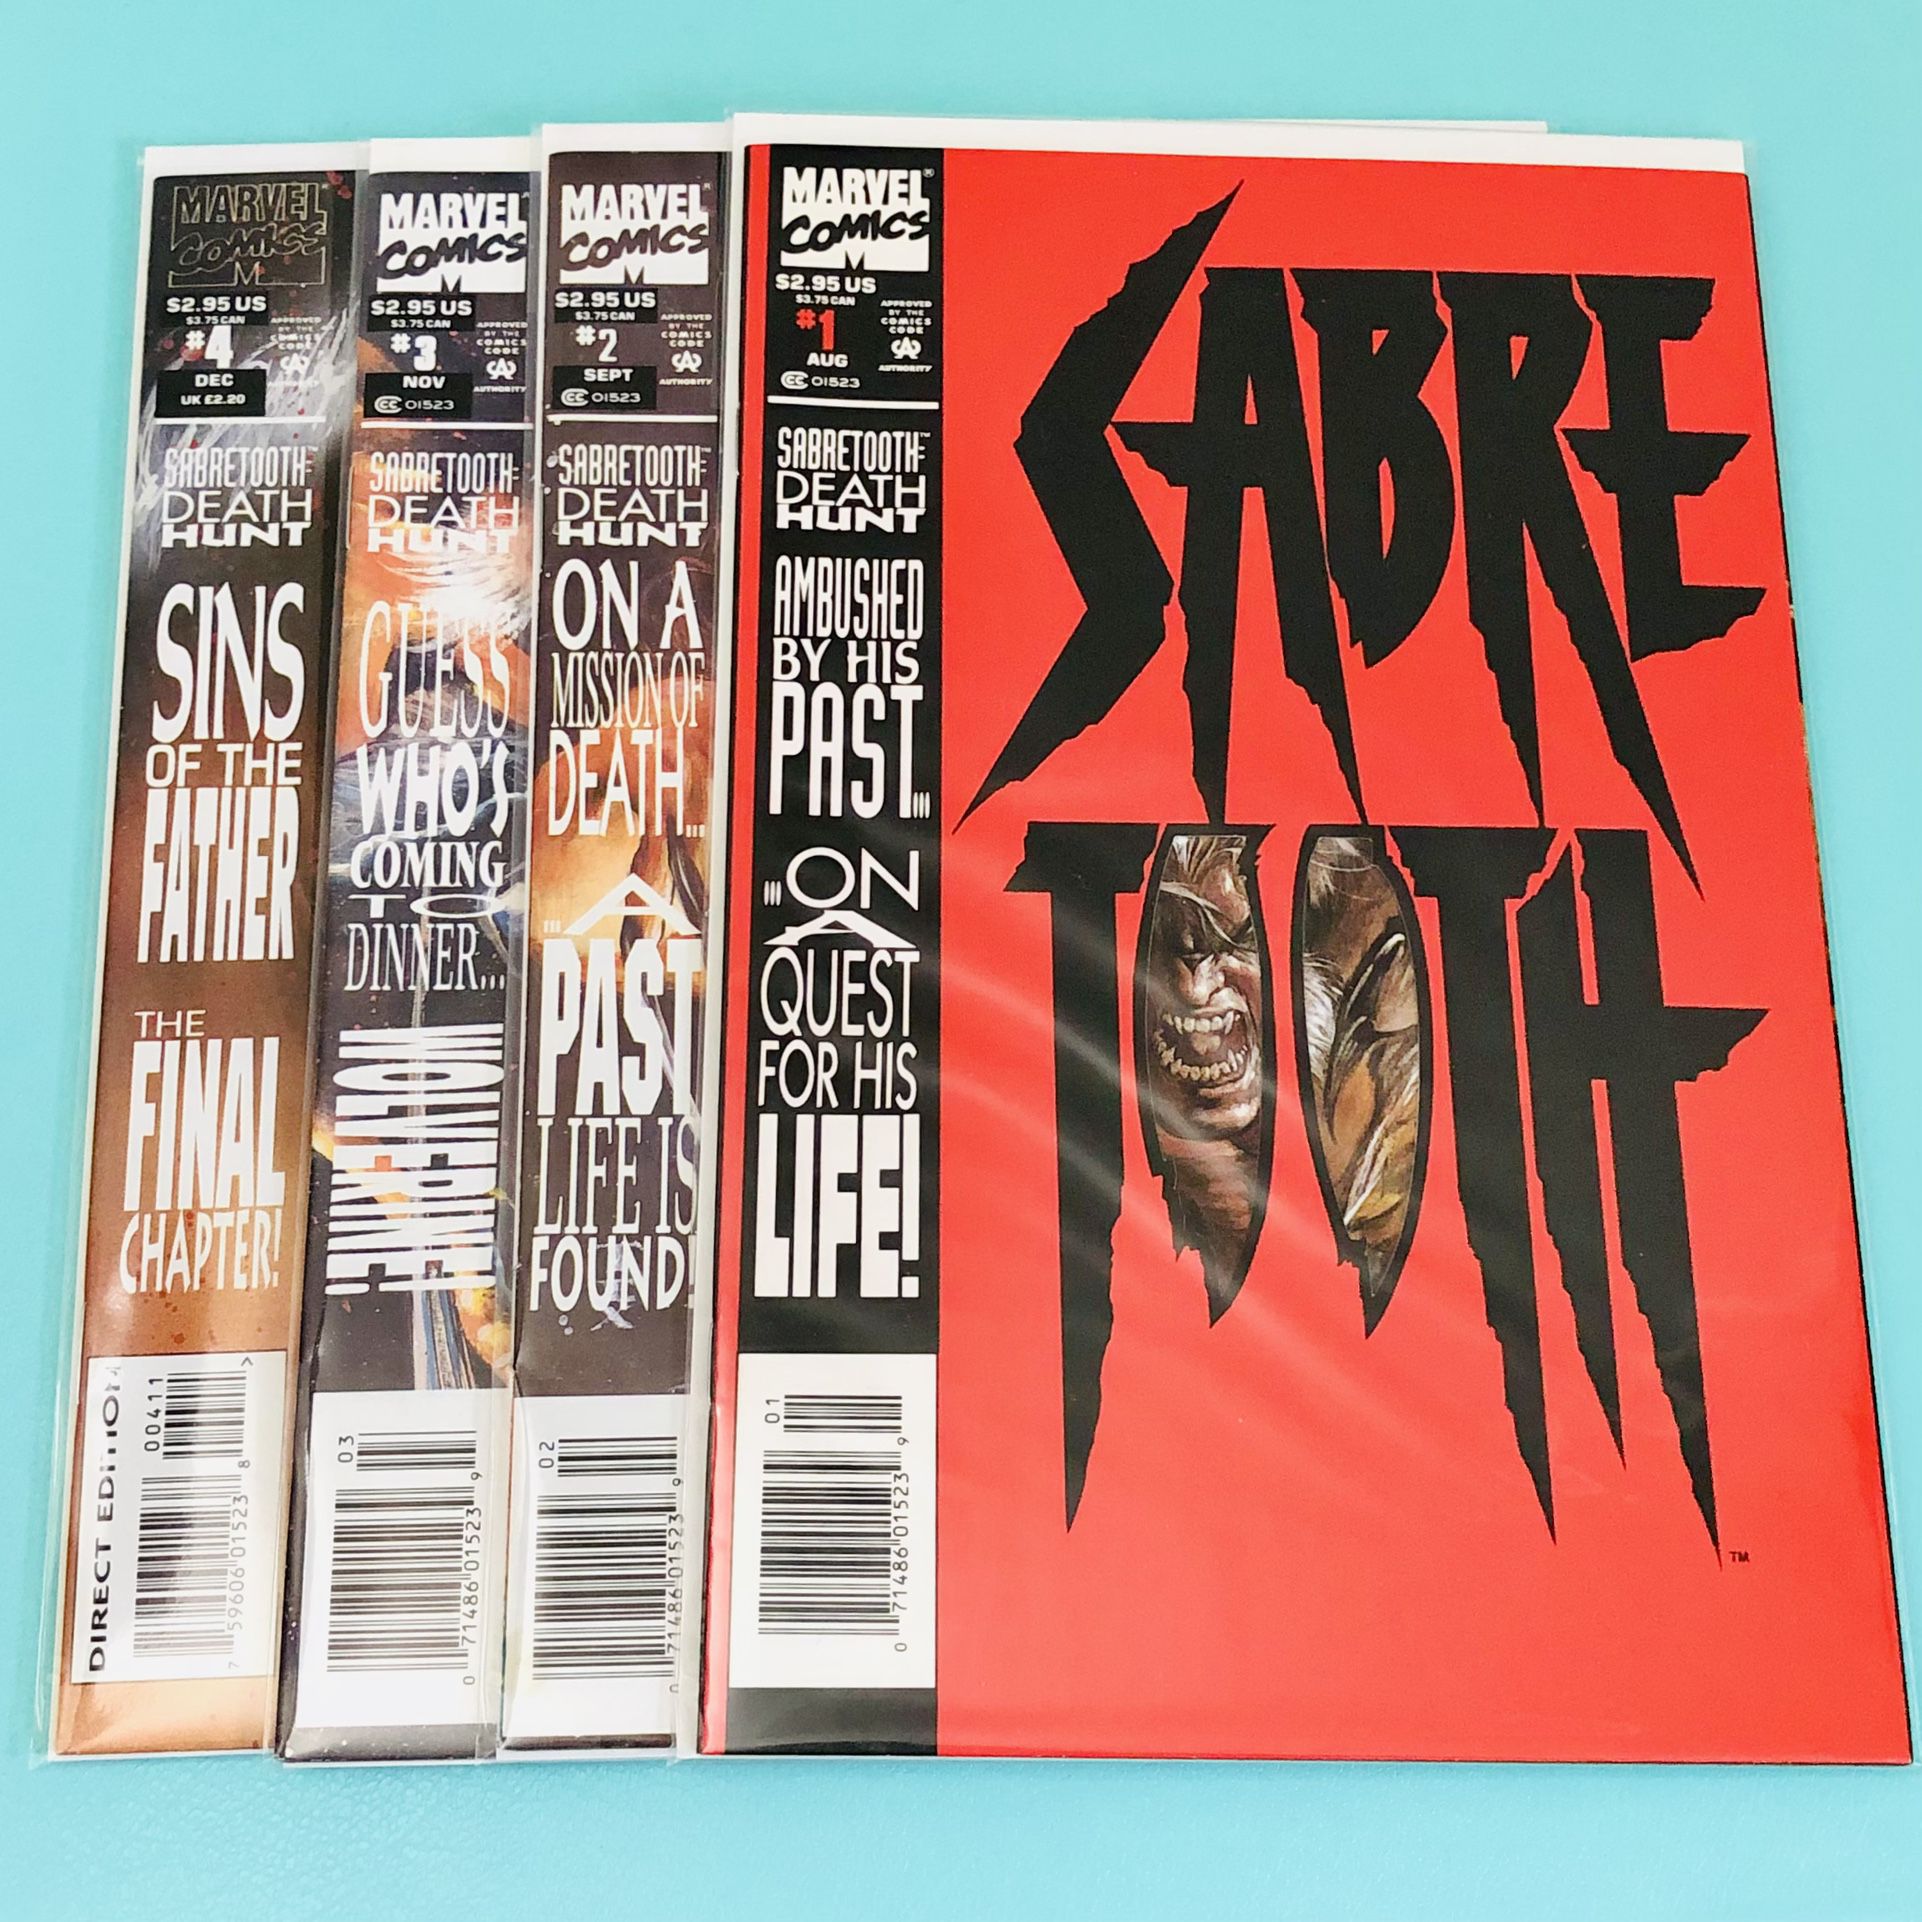 Marvel Comics 🐯 Sabretooth: Death Hunt 4-issue Limited Series COMPLETE